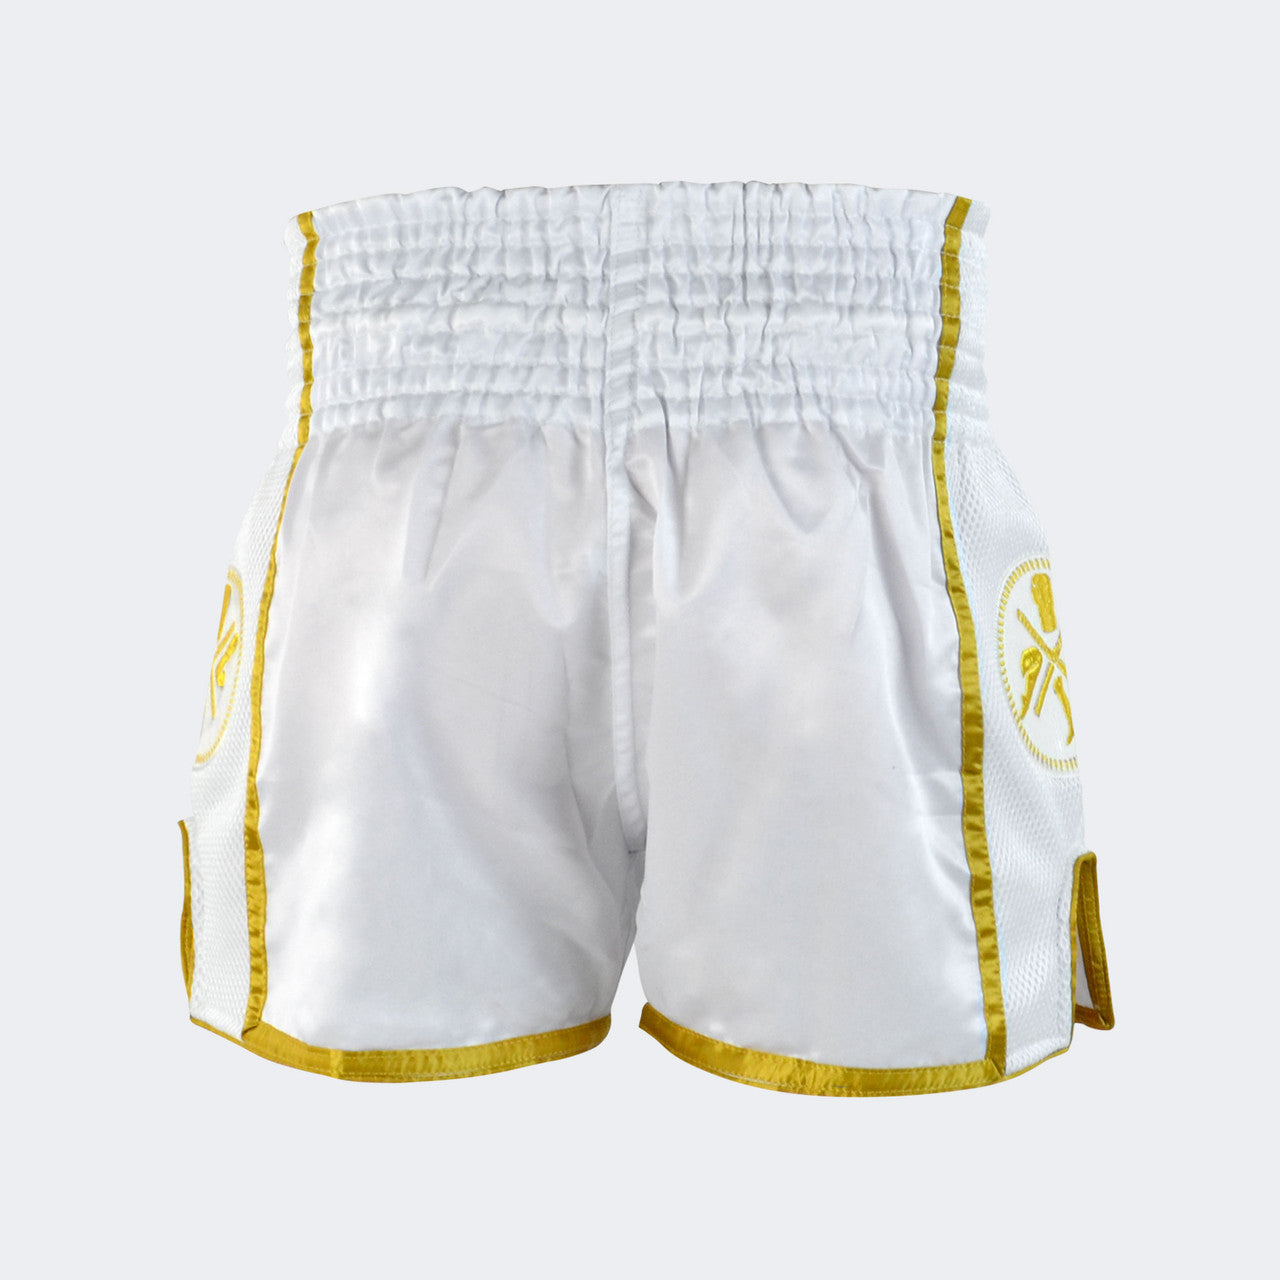 CRNR Muay Thai Shorts - Hvit / Gull